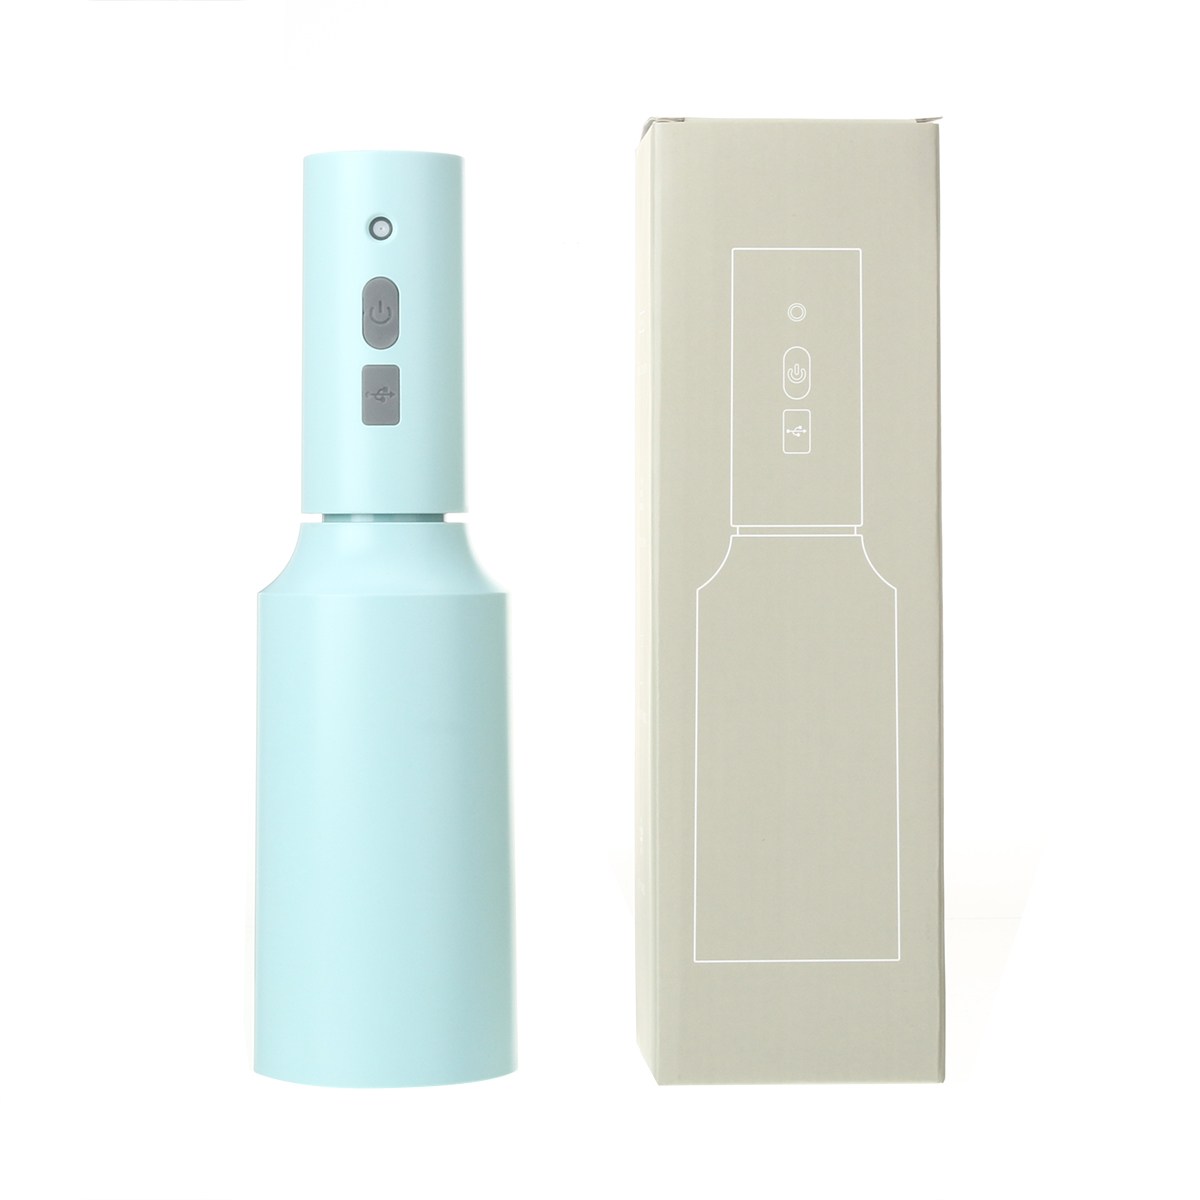 JETEVEN-750ml-Disinfectant-Sprayer-USB-Charging-Disinfectant-Soap-Dispenser-Dispenser-Handheld-Elect-1898962-13